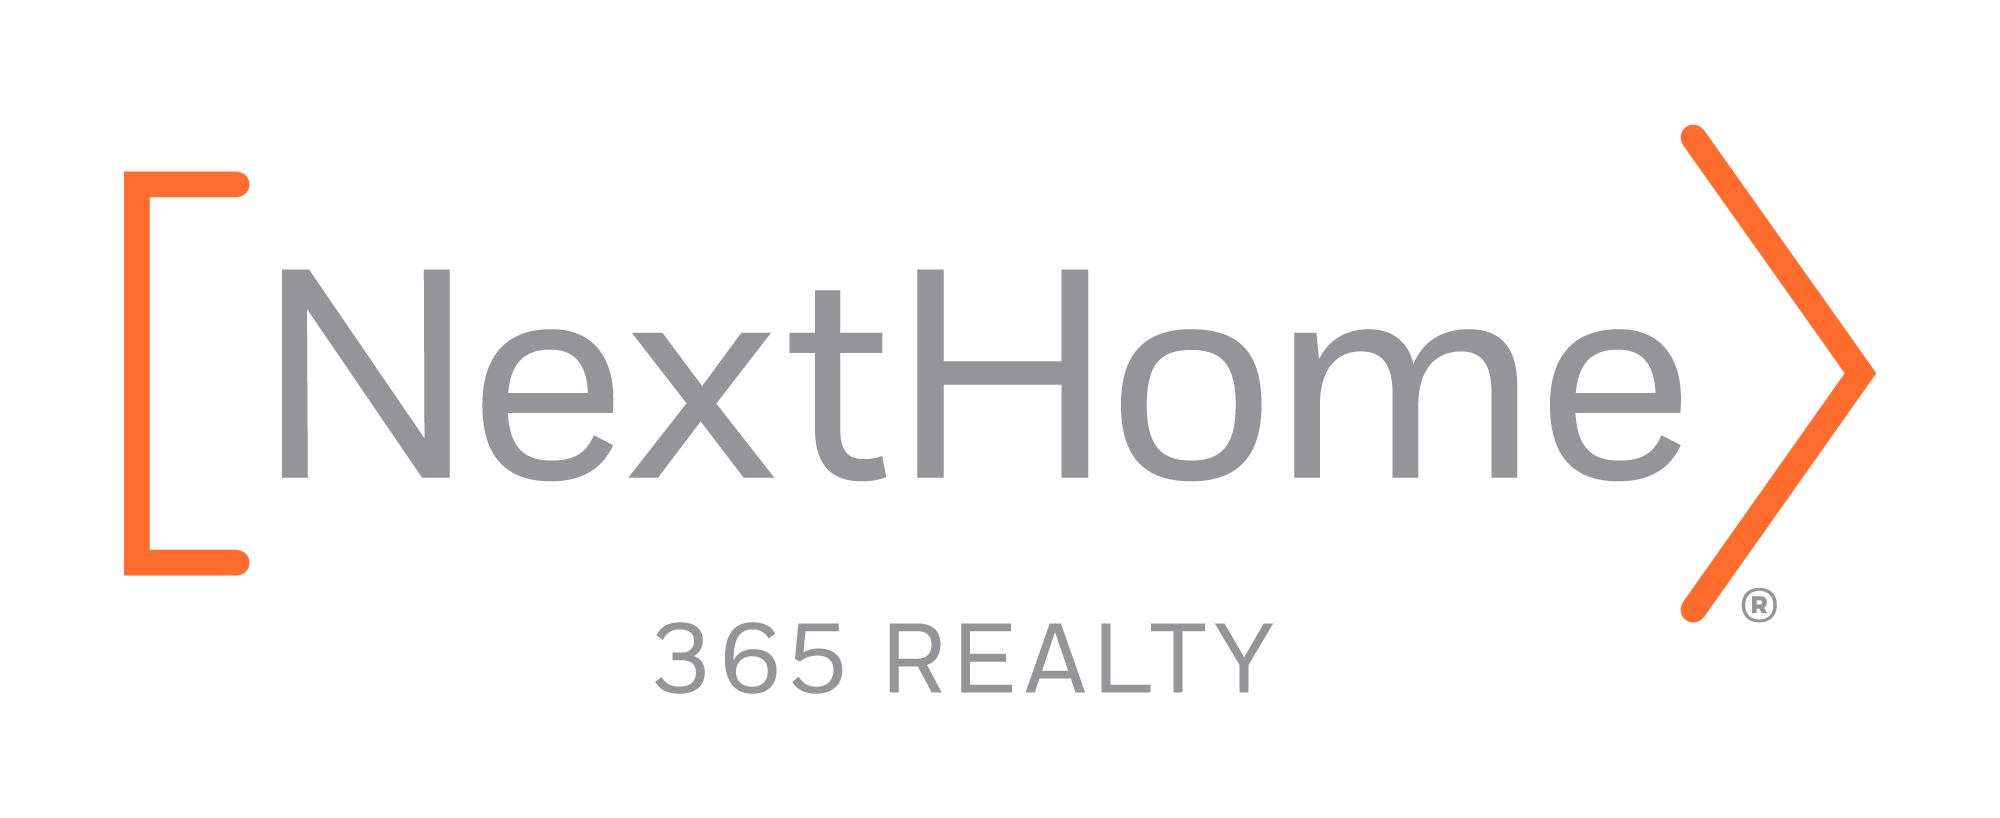 Next Home 365